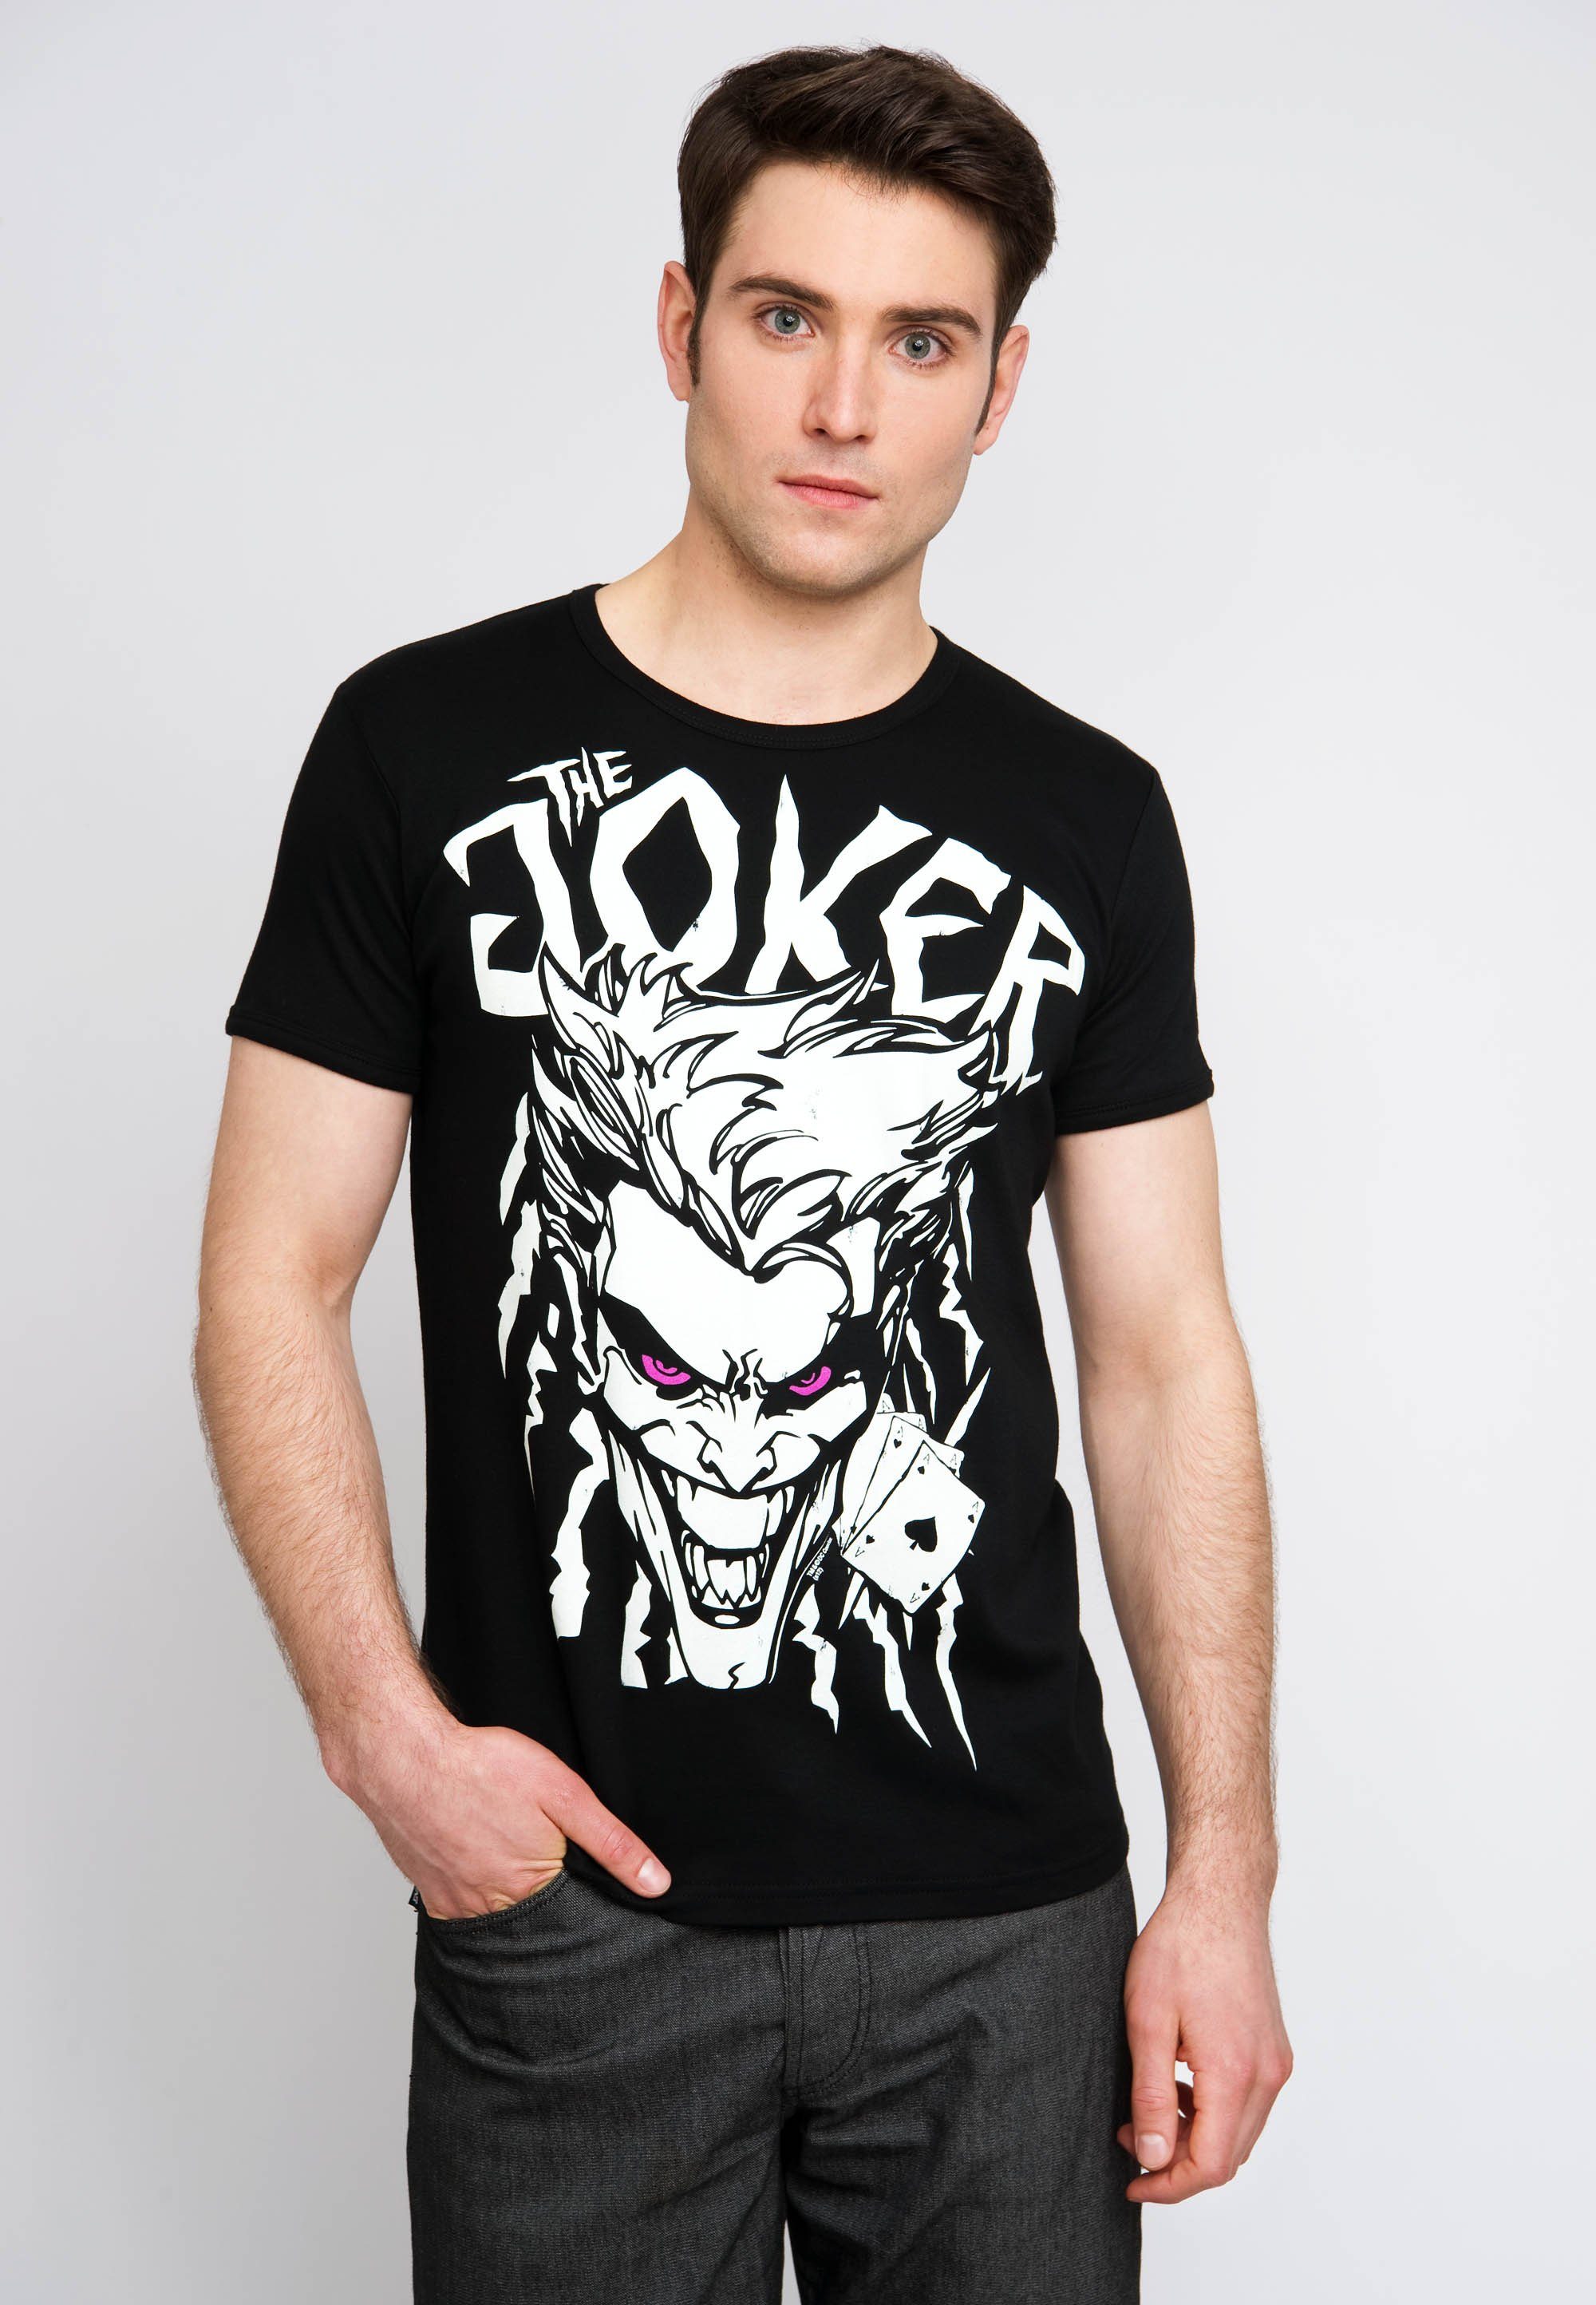 Aces The Joker tollem - T-Shirt Joker-Print LOGOSHIRT mit